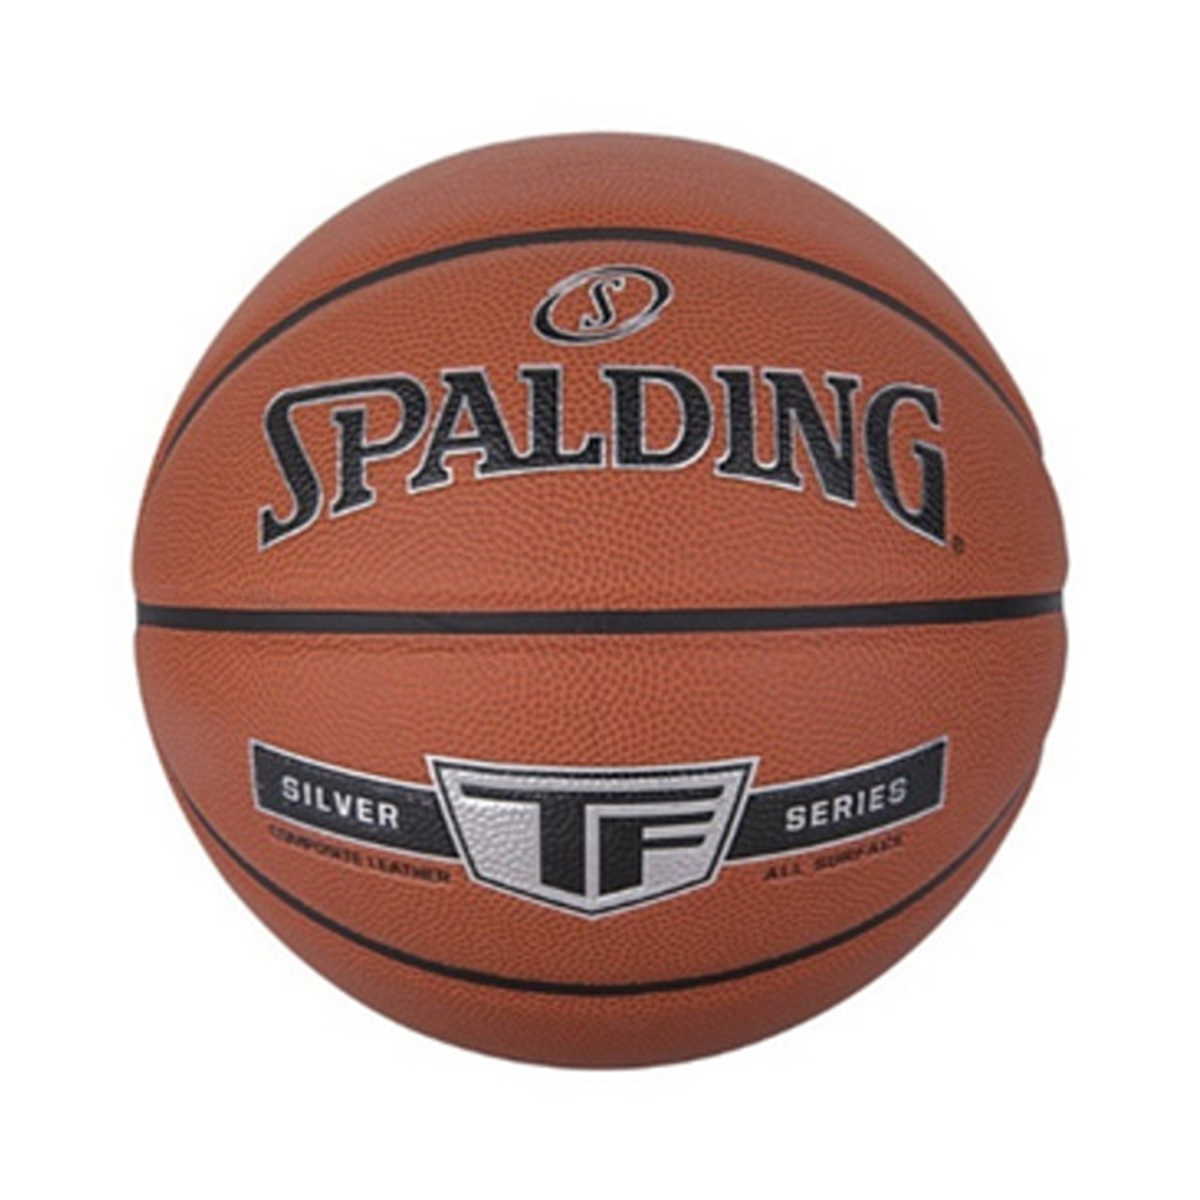 Sportado Spalding Basketball Sz7 NBA Silver Sz 7 76 859Z1